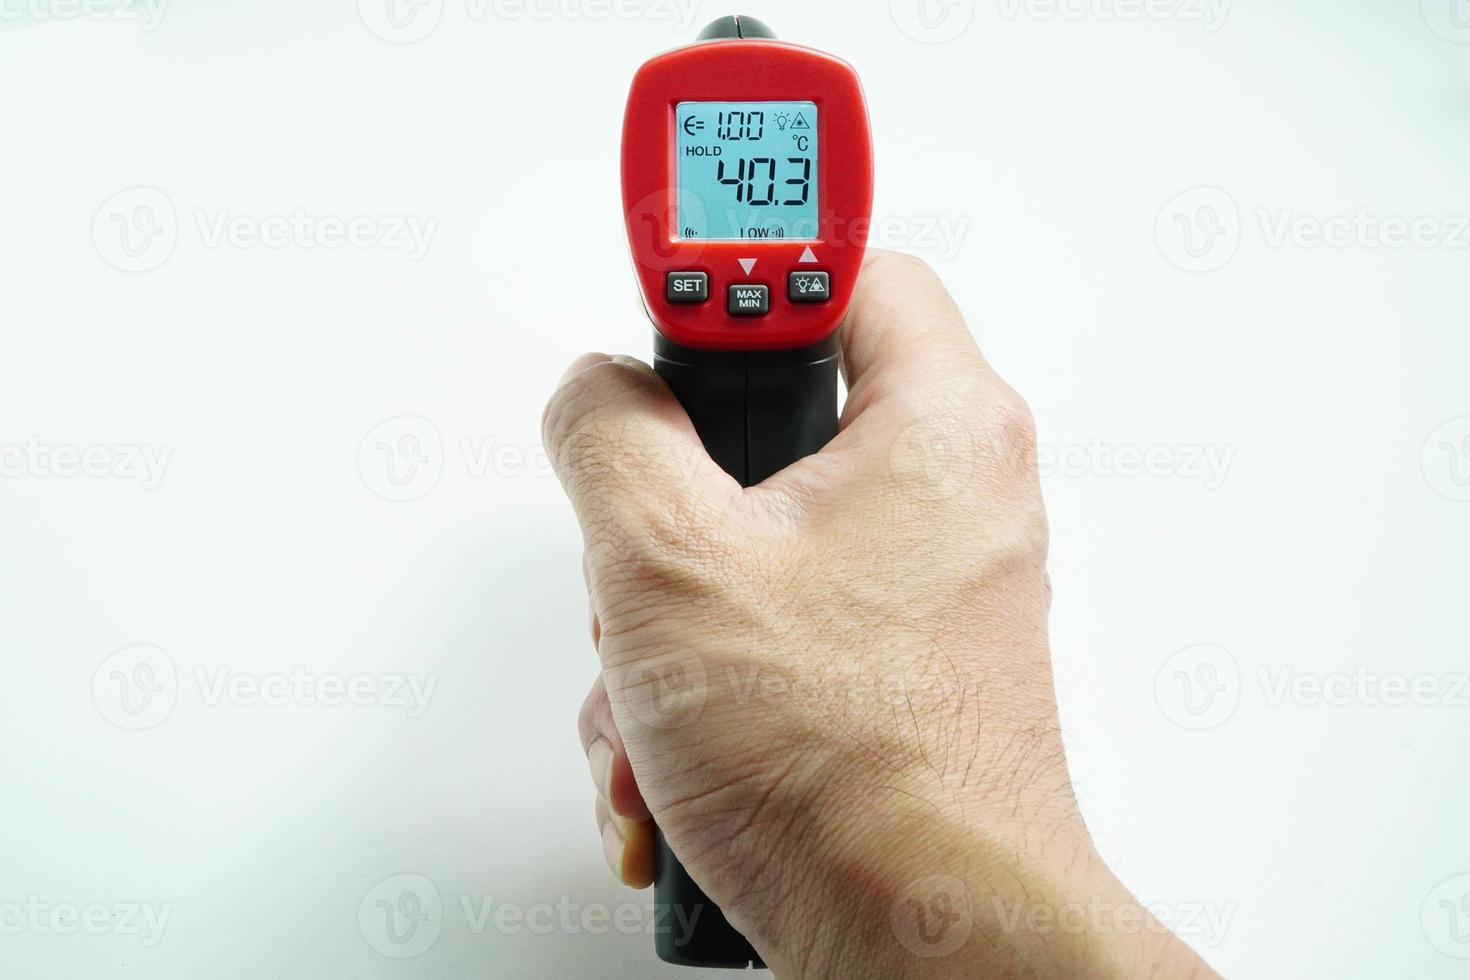 termômetro eletrônico médico com indicadores de alta temperatura corporal, covid-19, em um fundo branco foto